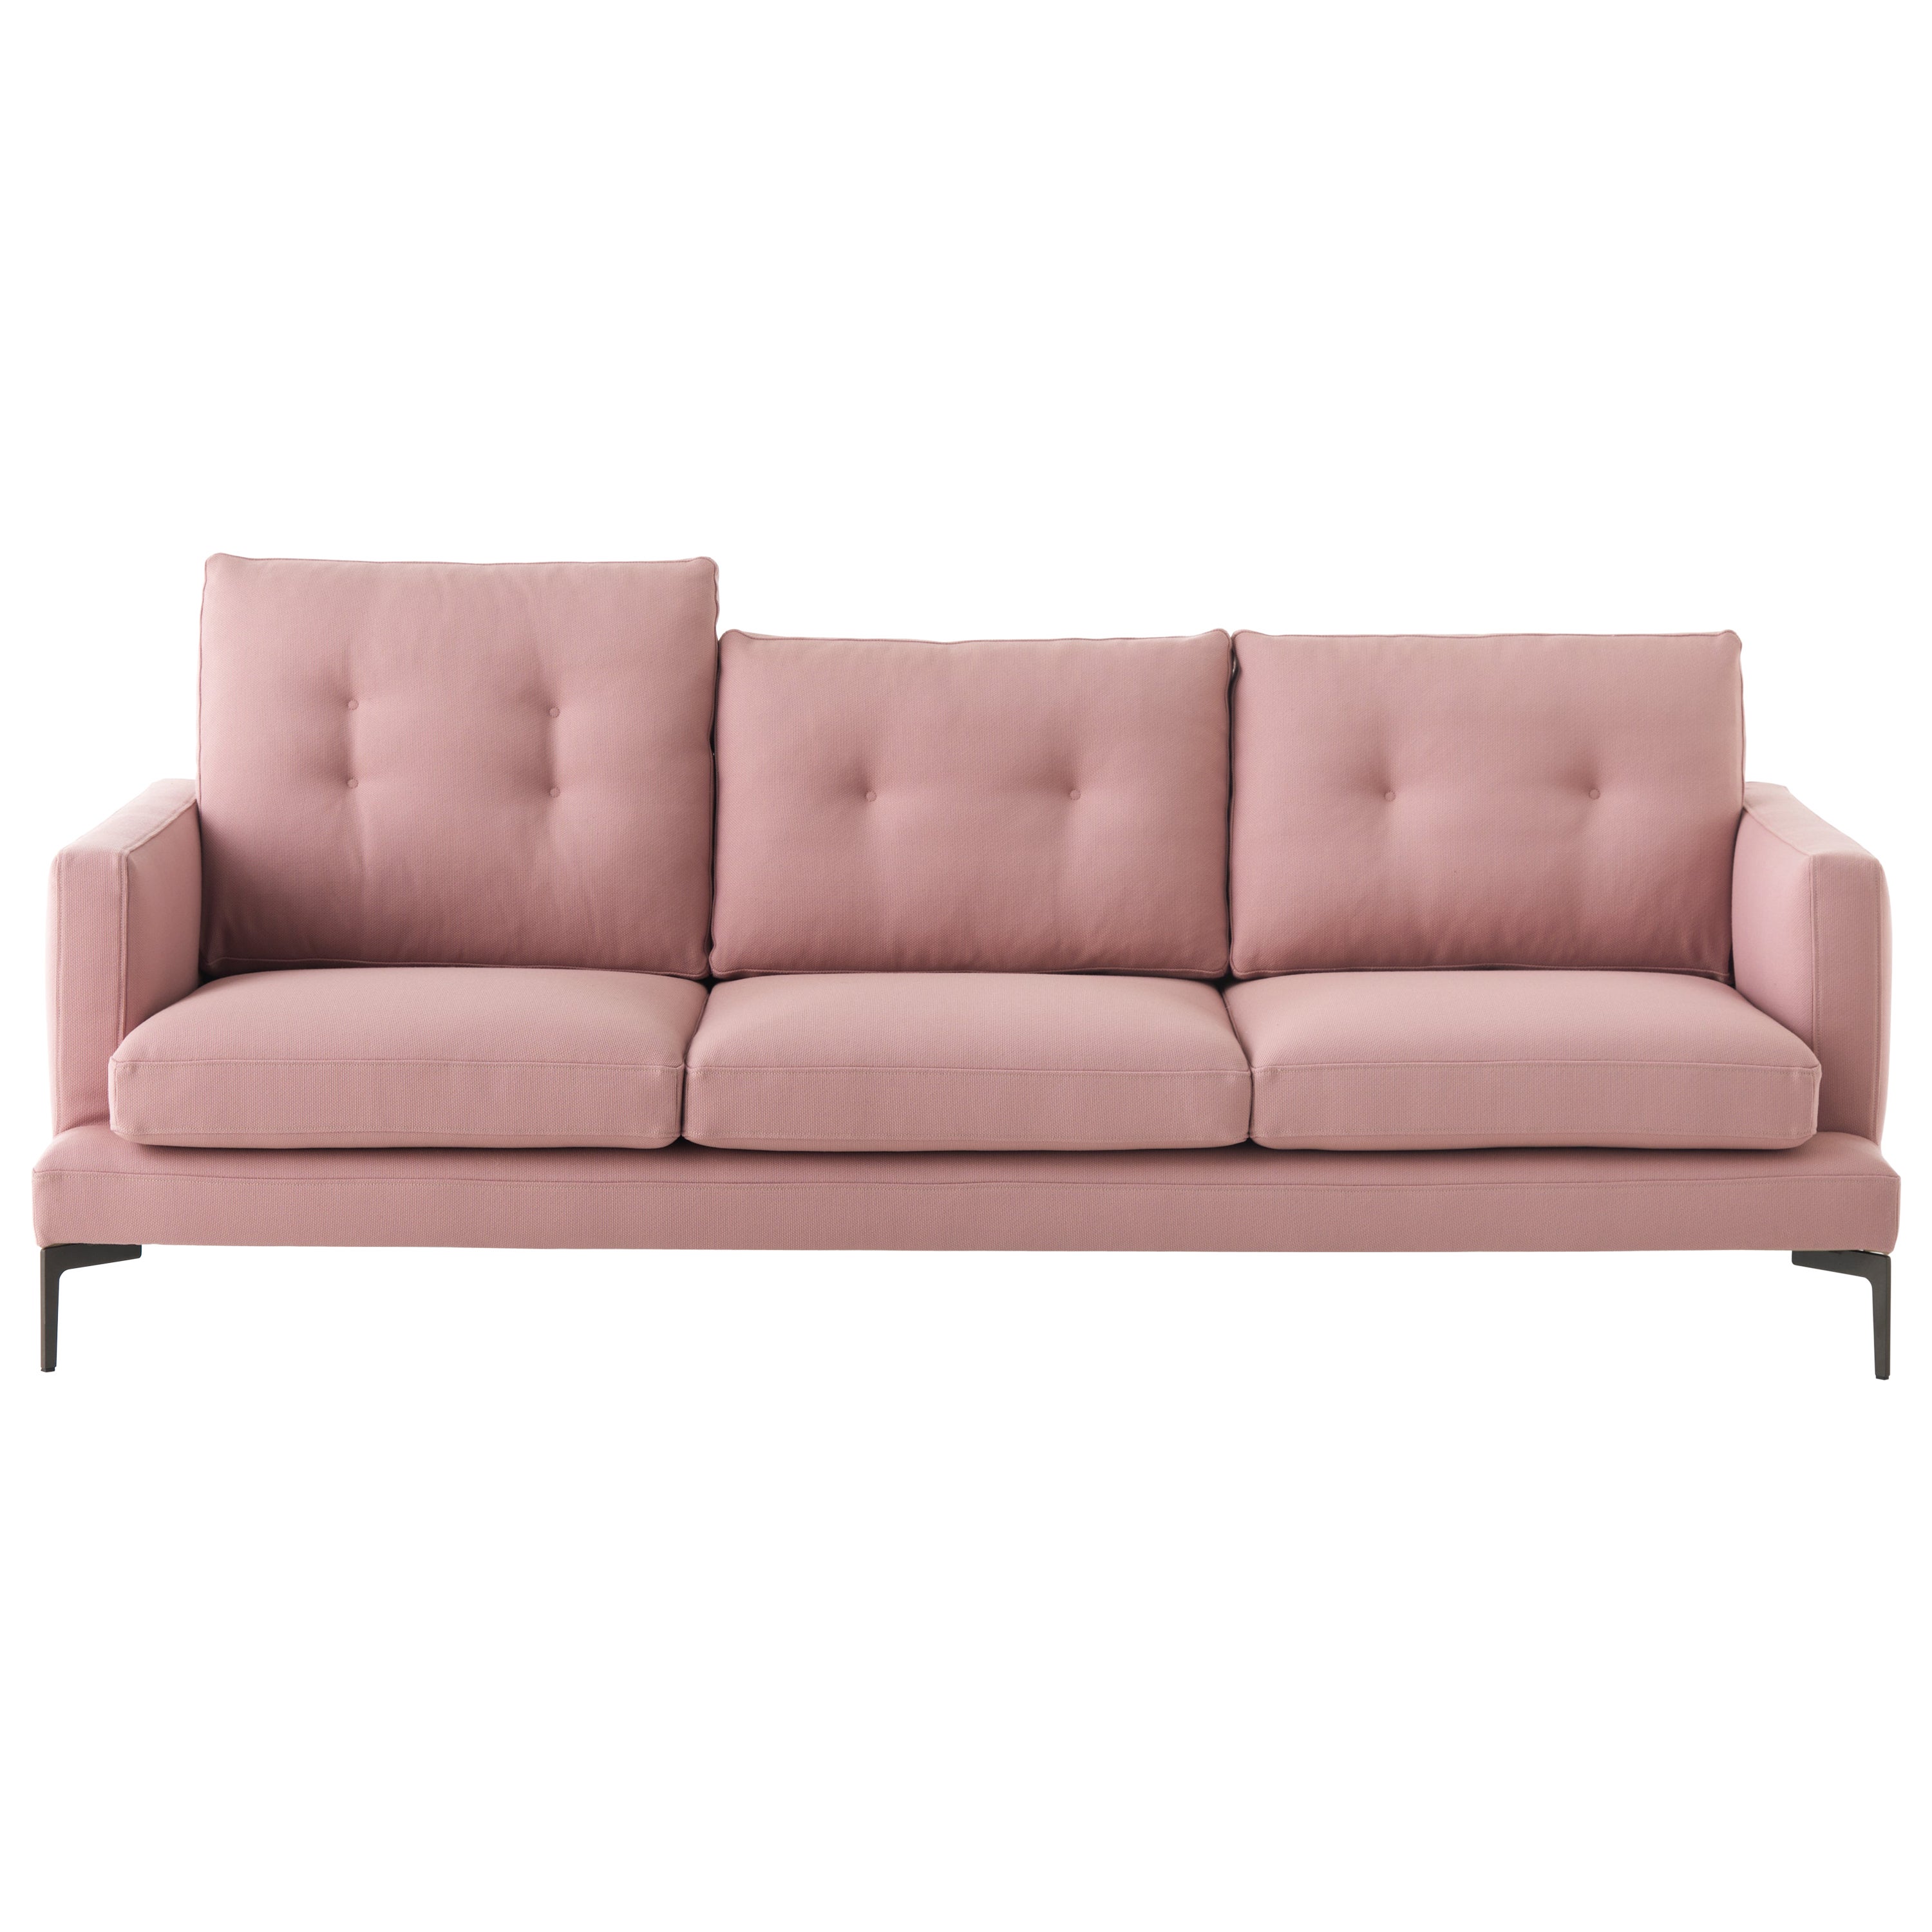 3-Sitz-Sofa 250 mit hohem Kissen in Rosa mit geflochtener Polsterung, Sergio Bicego